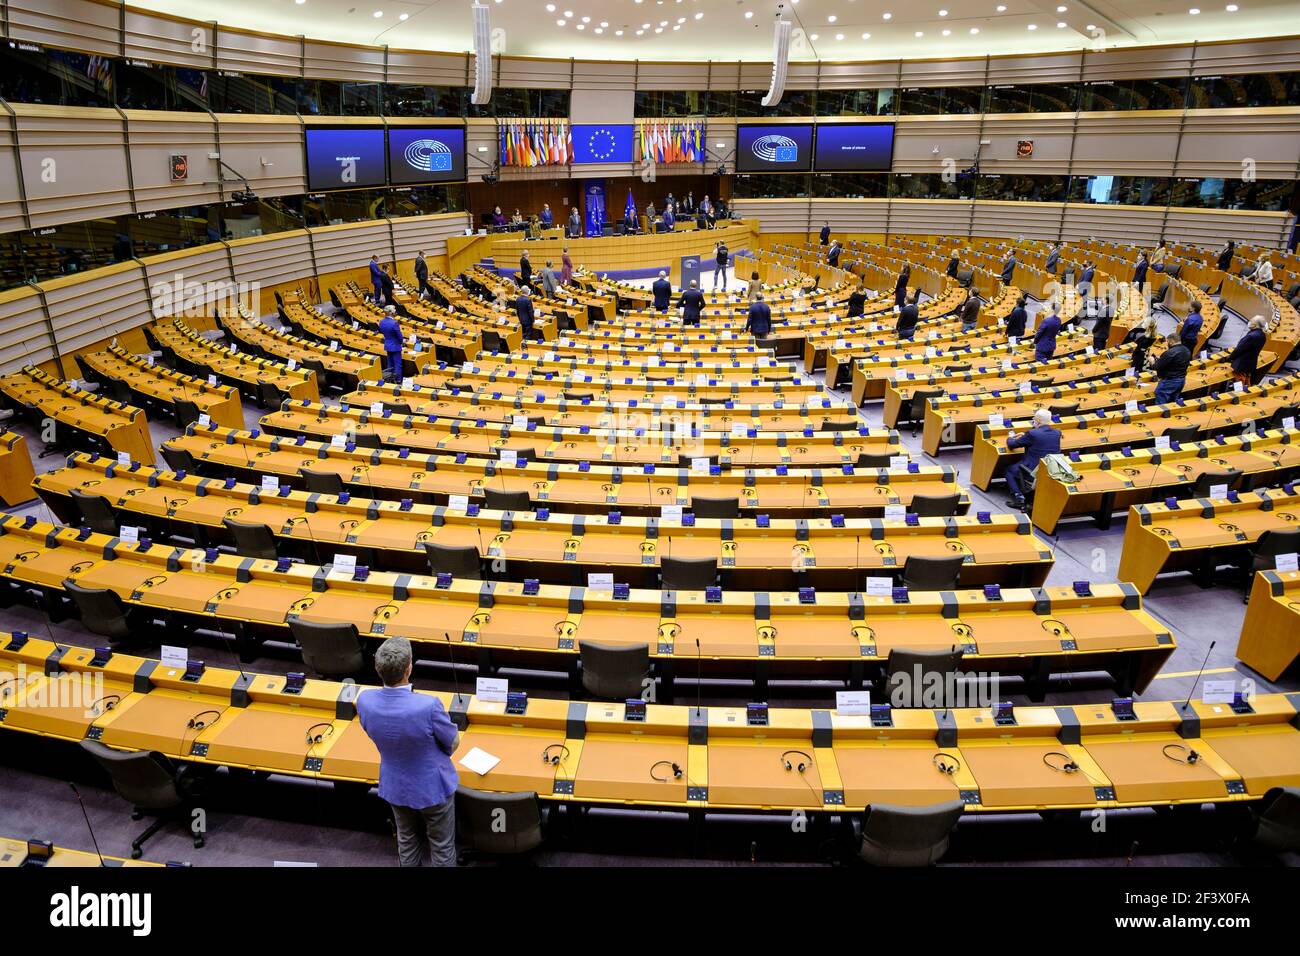 Belgique, Bruxelles : hémicycle vide du Parlement européen le 19 octobre 2020. En raison de la pandémie COVID-19, le Parlement tient des réunions virtuelles Banque D'Images